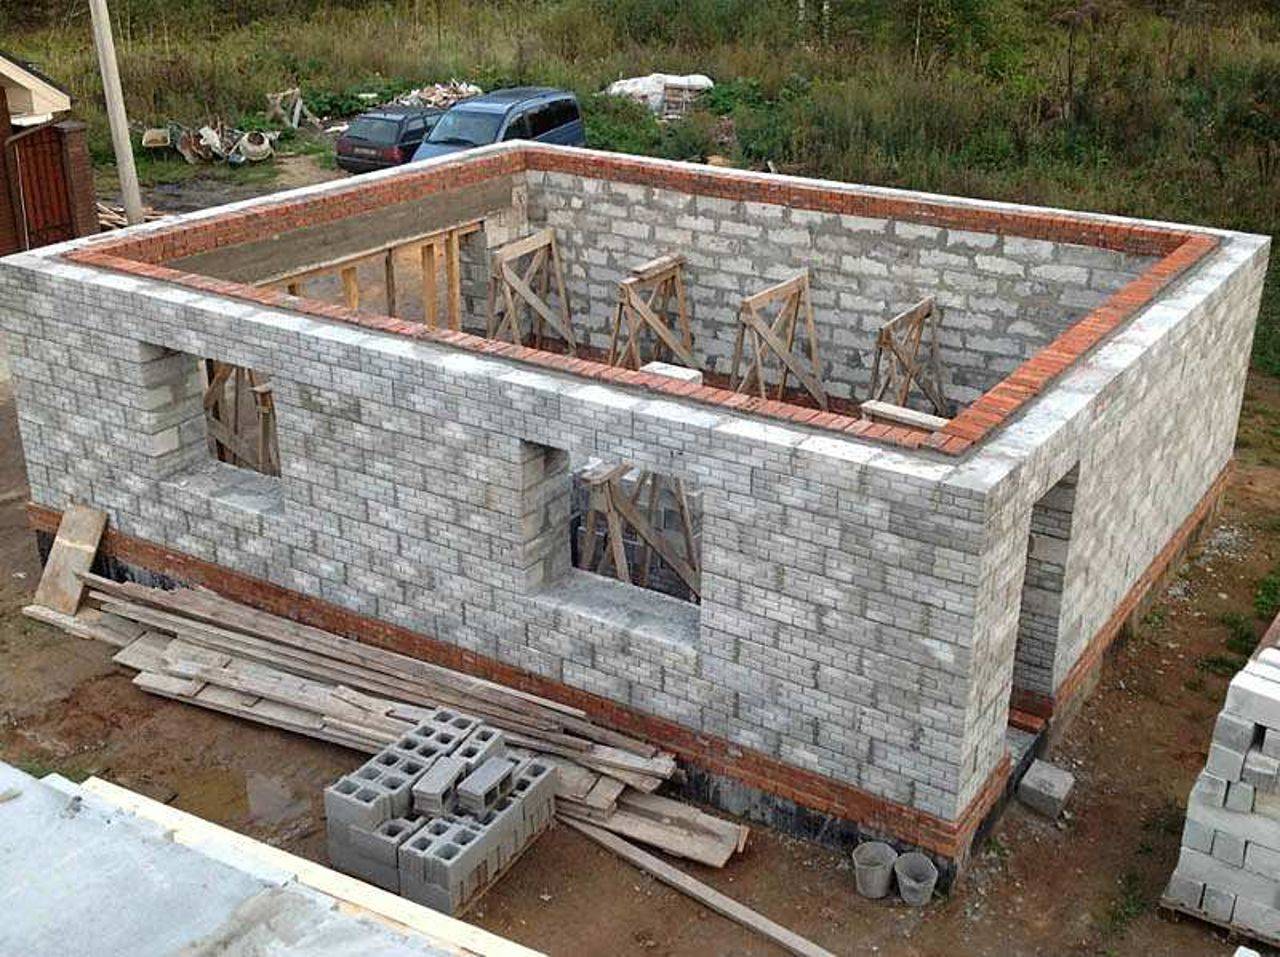 Строительство дома из пенобетона (пеноблоков) – пошаговая инструкция от а до я